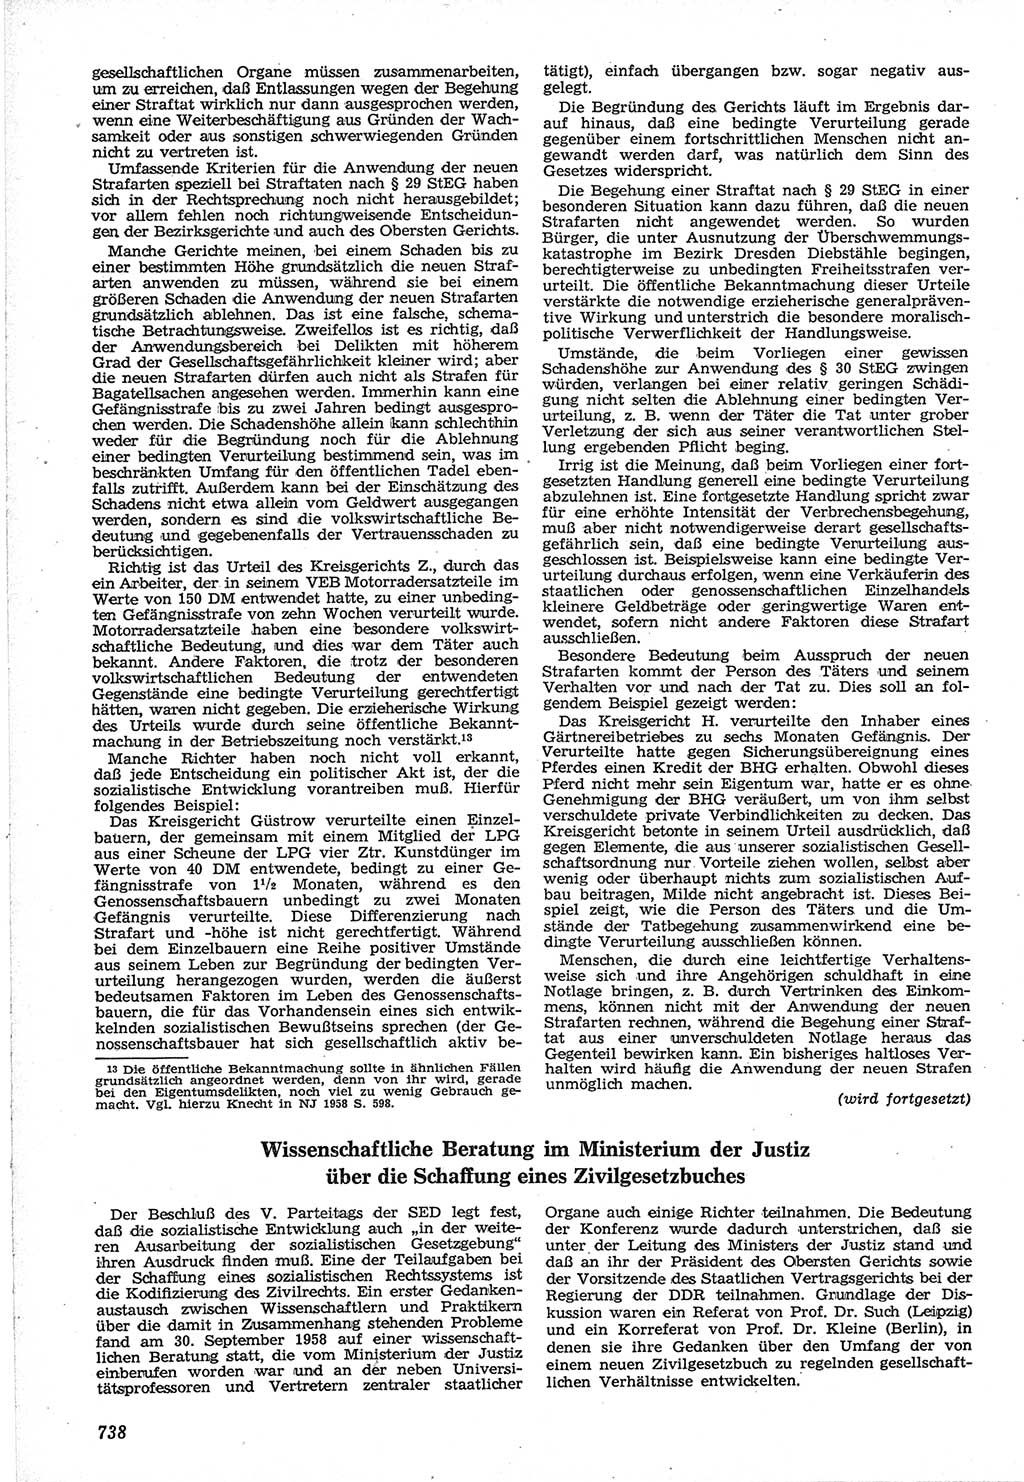 Neue Justiz (NJ), Zeitschrift für Recht und Rechtswissenschaft [Deutsche Demokratische Republik (DDR)], 12. Jahrgang 1958, Seite 738 (NJ DDR 1958, S. 738)